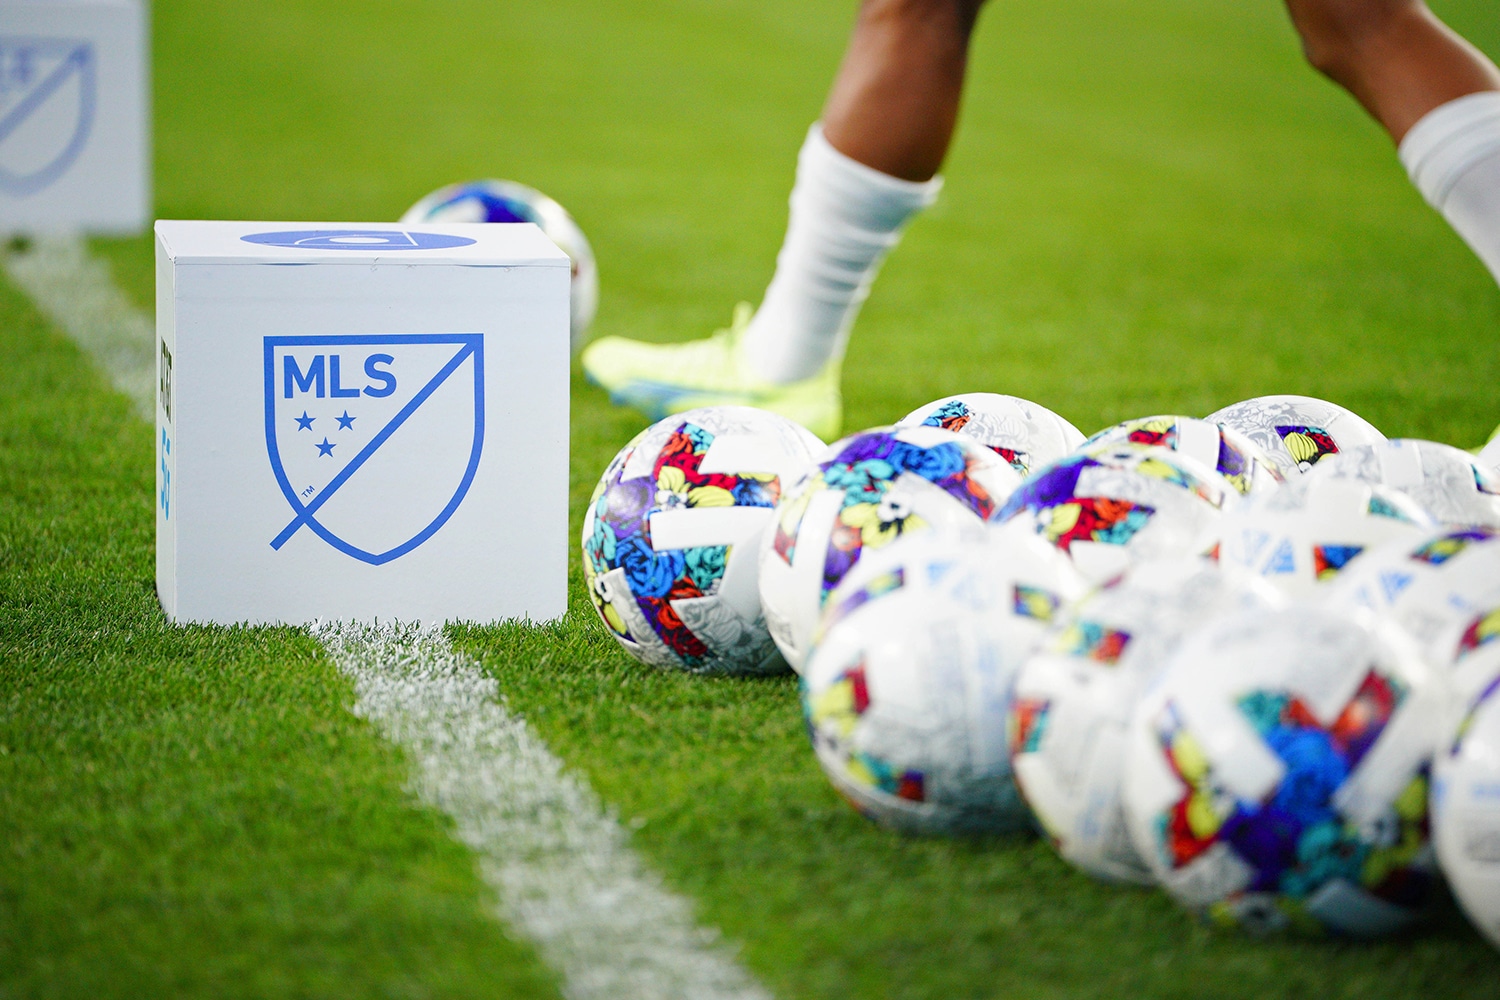 Multiple soccer balls on sideline of MLS game